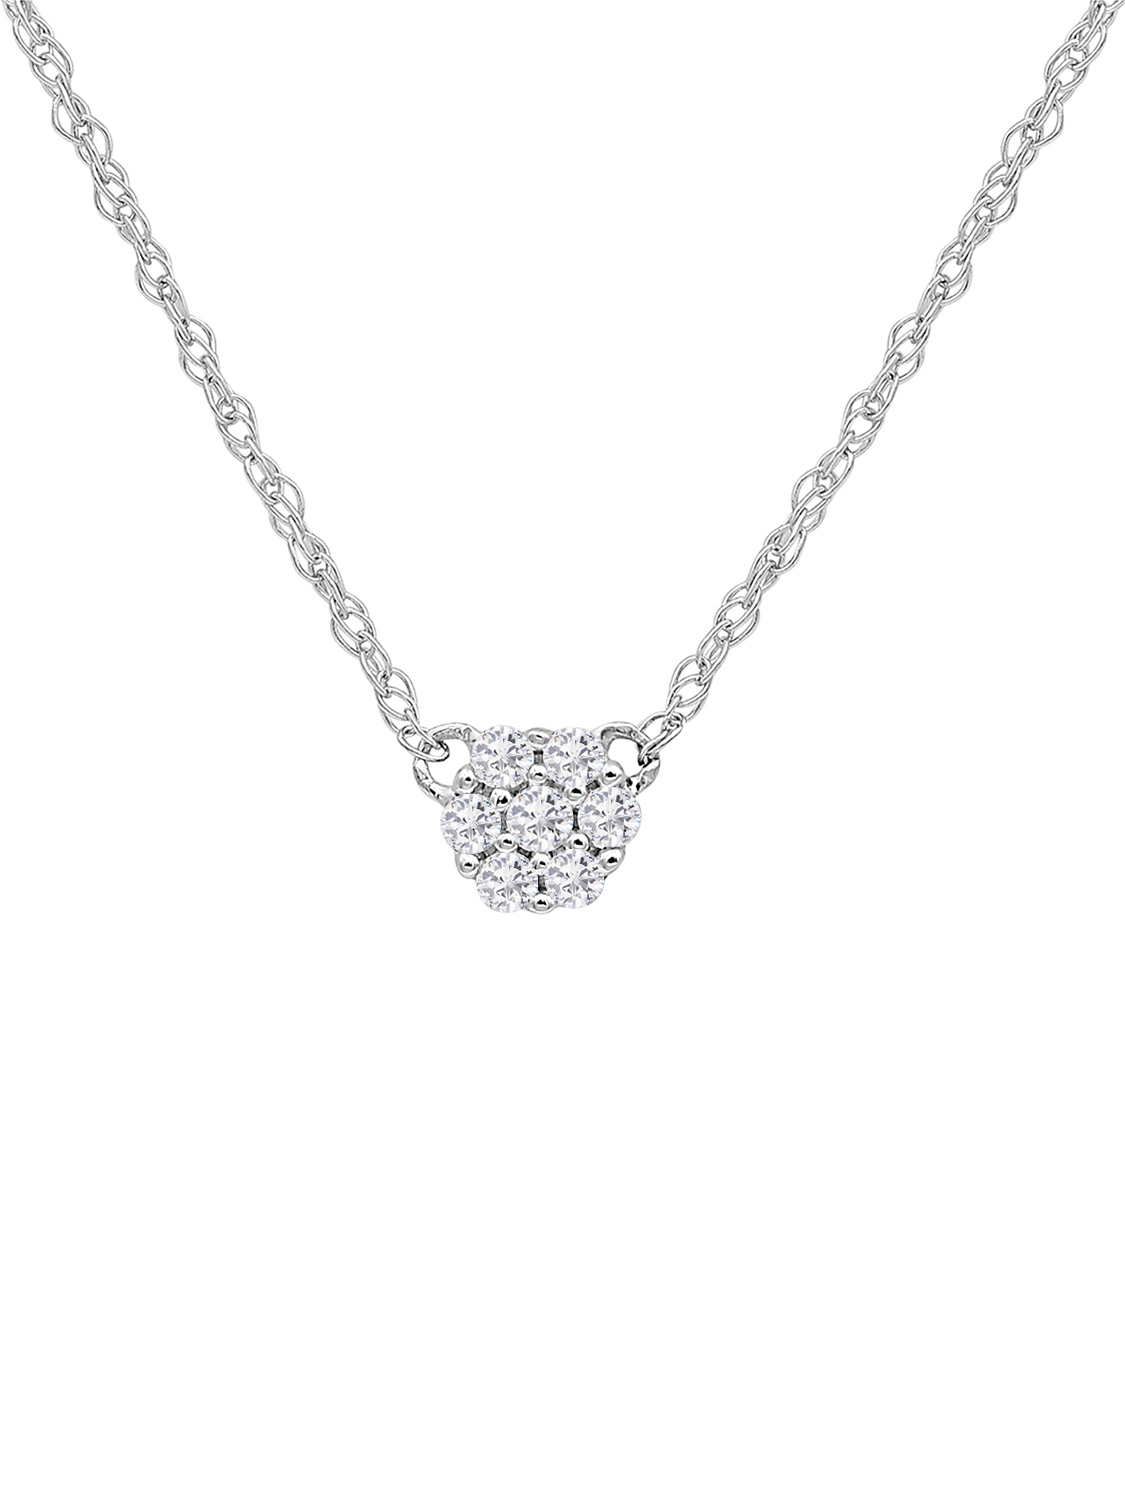 Juliette - Damen Halskette mit Diamanten 585 Weißgold - 0,07ct.